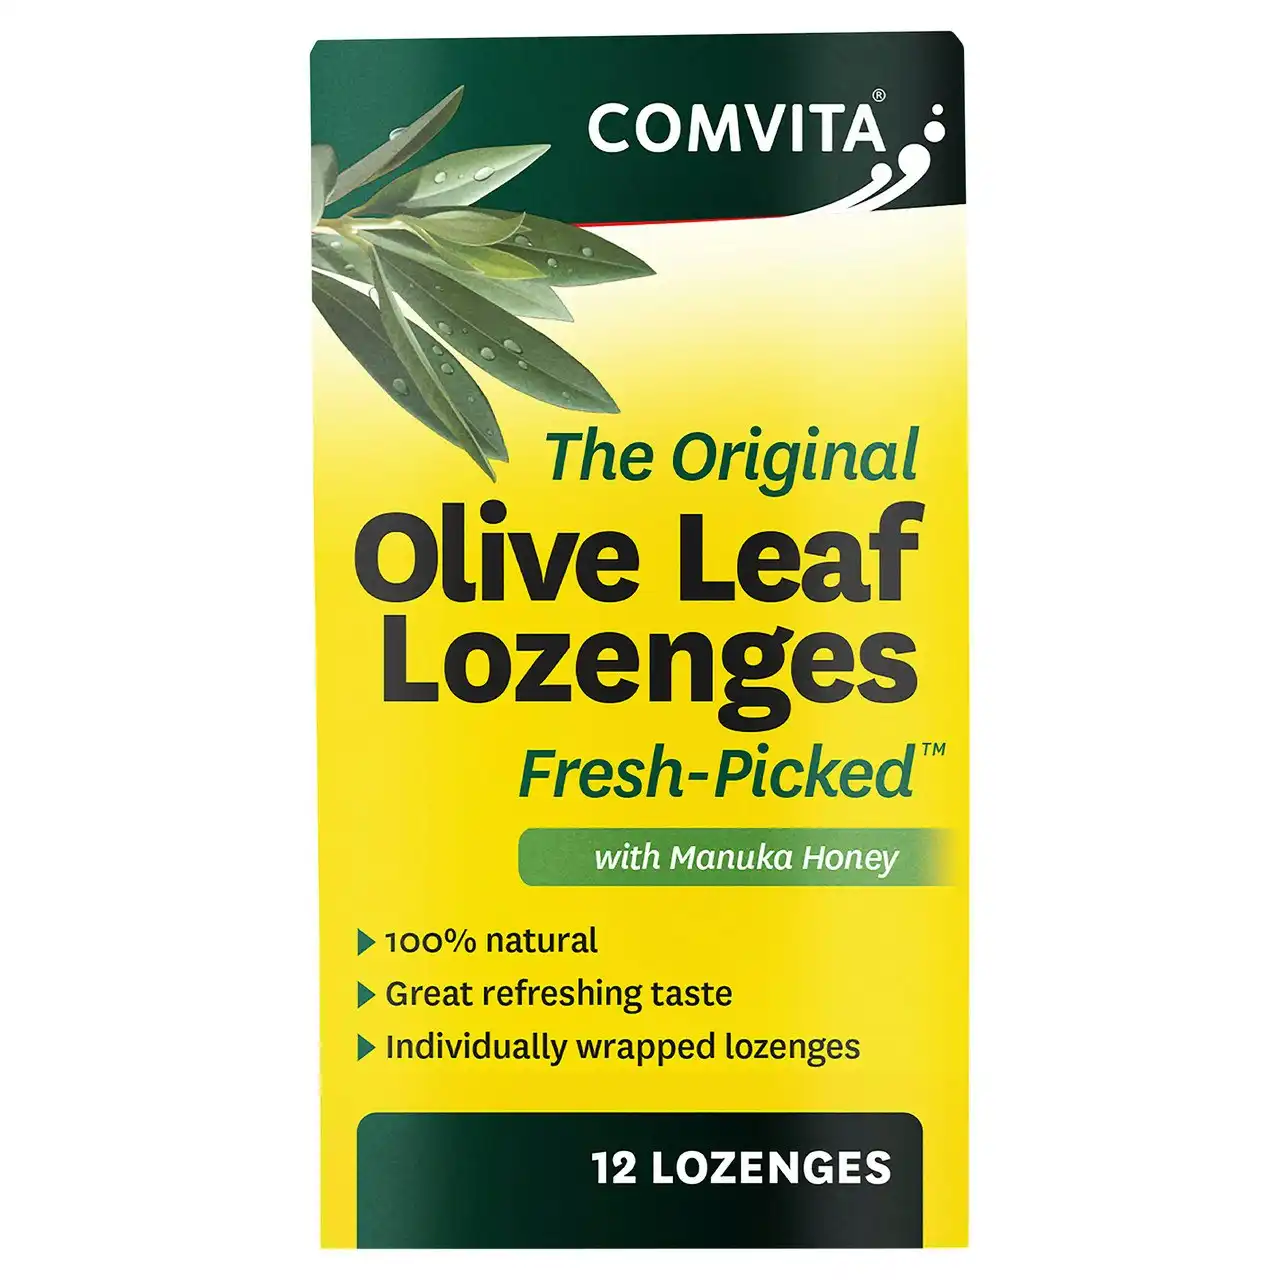 Comvita Olive Leaf Lozenges with Manuka Honey 12 loz